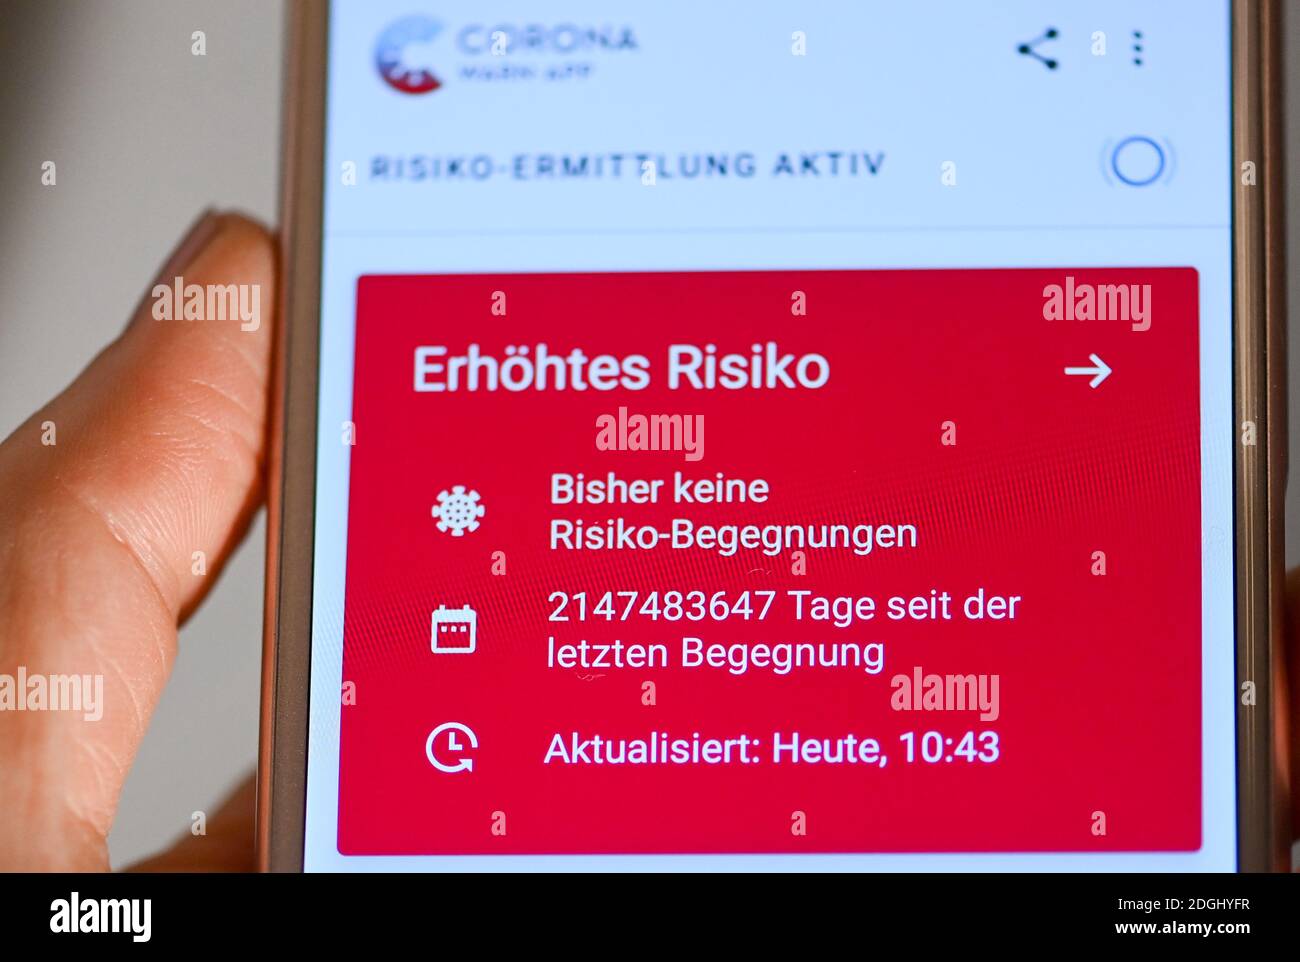 06 dicembre 2020, Berlino: Su uno smartphone, l'app di avvertimento Corona  aperta con display rosso indica un aumento del rischio nonostante non si  verifichi alcun rischio. Inoltre, viene visualizzato un numero irragionevole